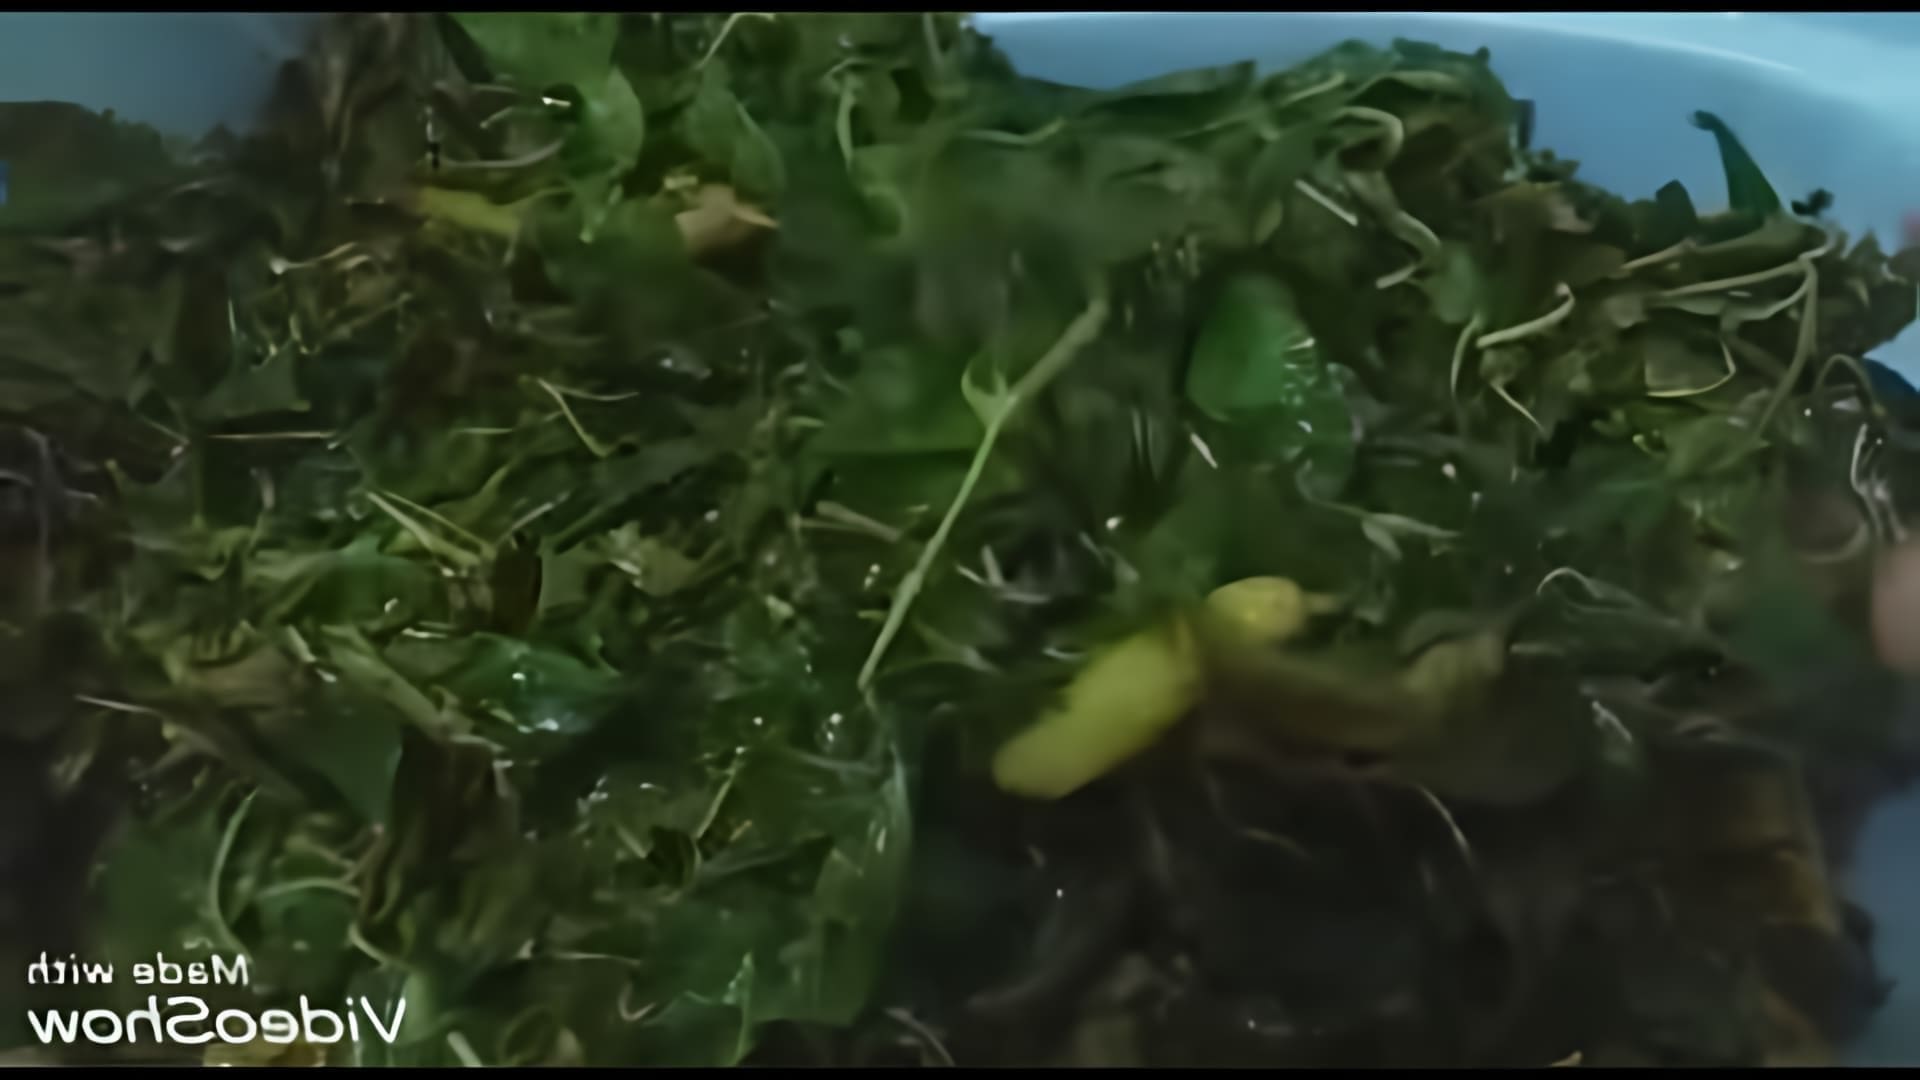 В этом видео автор показывает процесс заготовки листьев перца на зиму